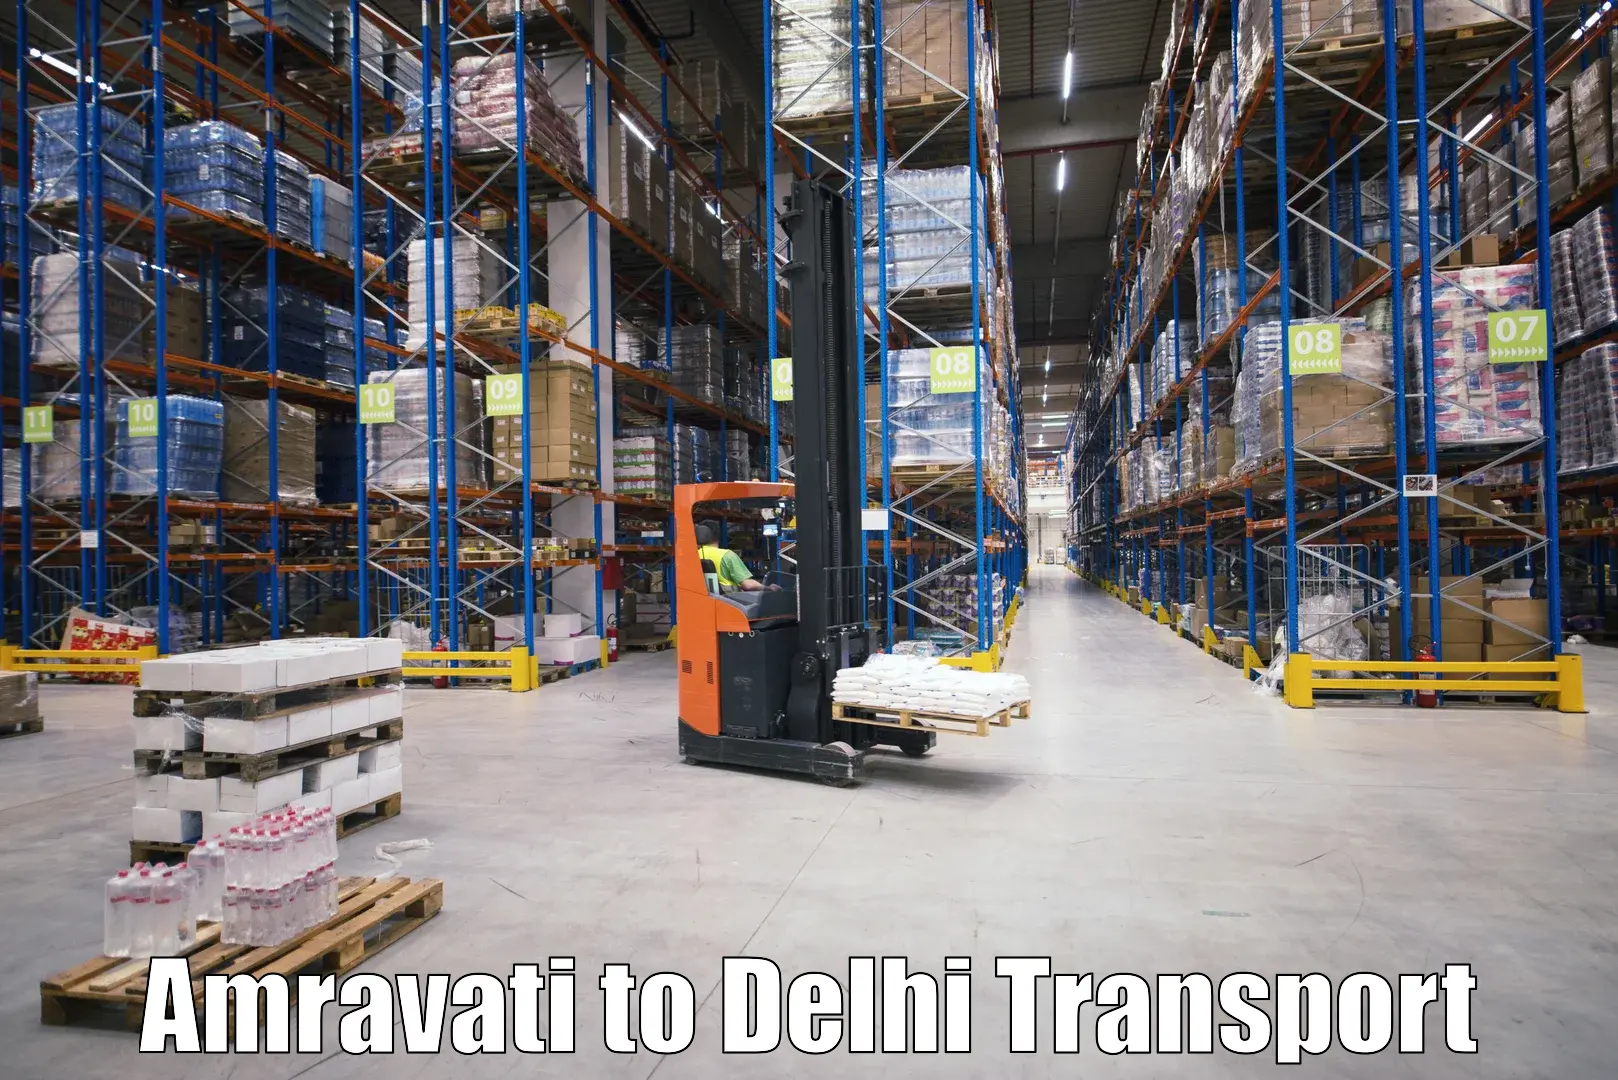 Road transport services Amravati to Ashok Vihar